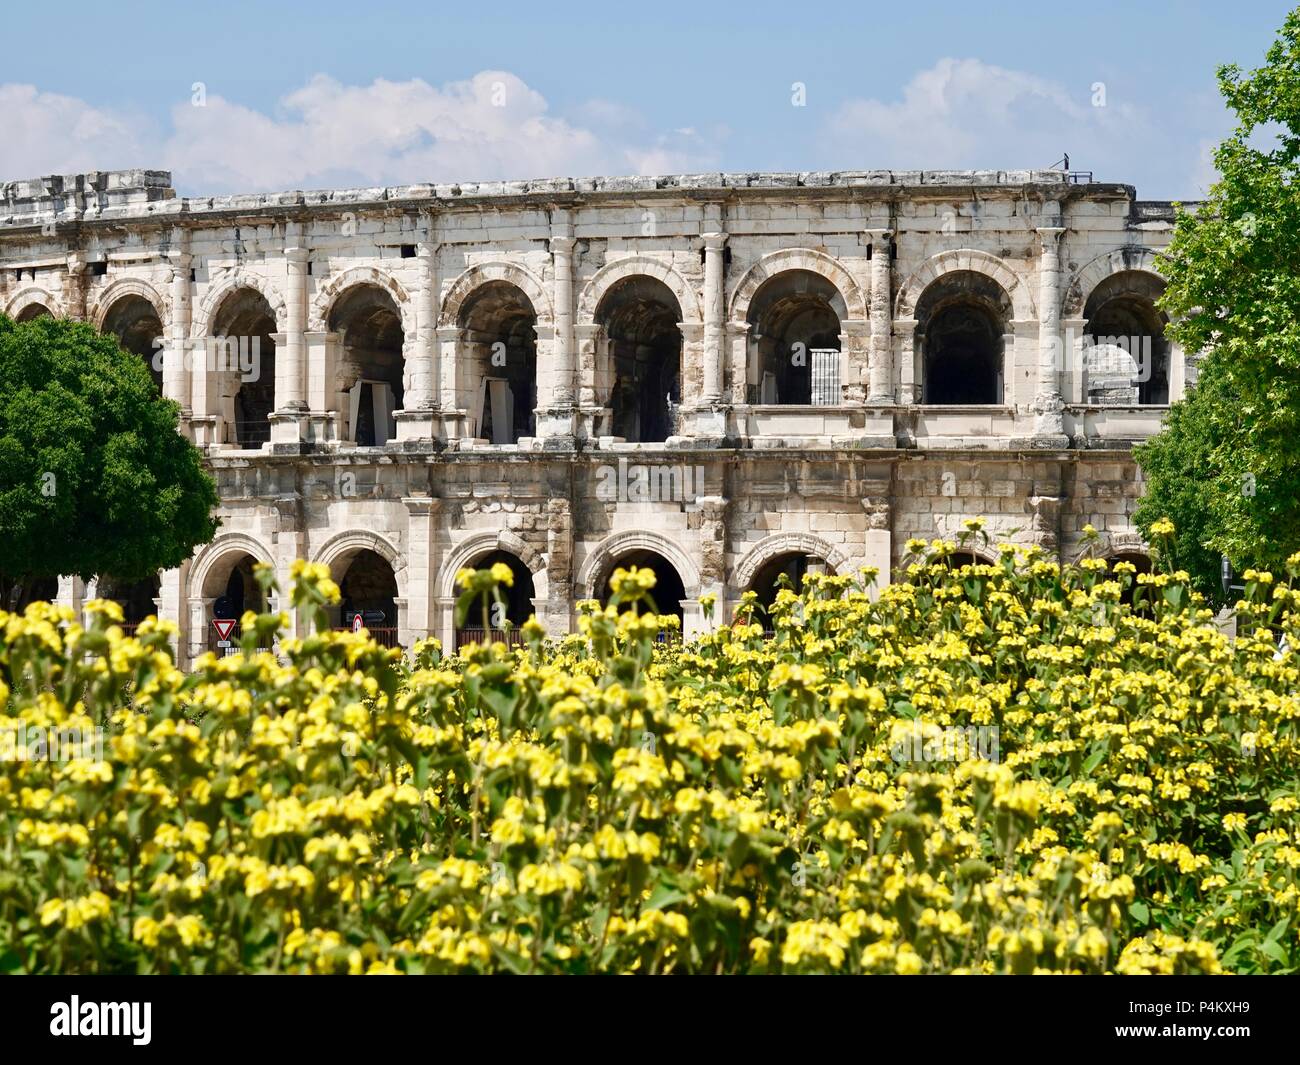 Auf einem Bett von gelben Blumen gesehen, das römische Amphitheater, die Arena gebaut über AD 70, Nîmes, Frankreich Stockfoto